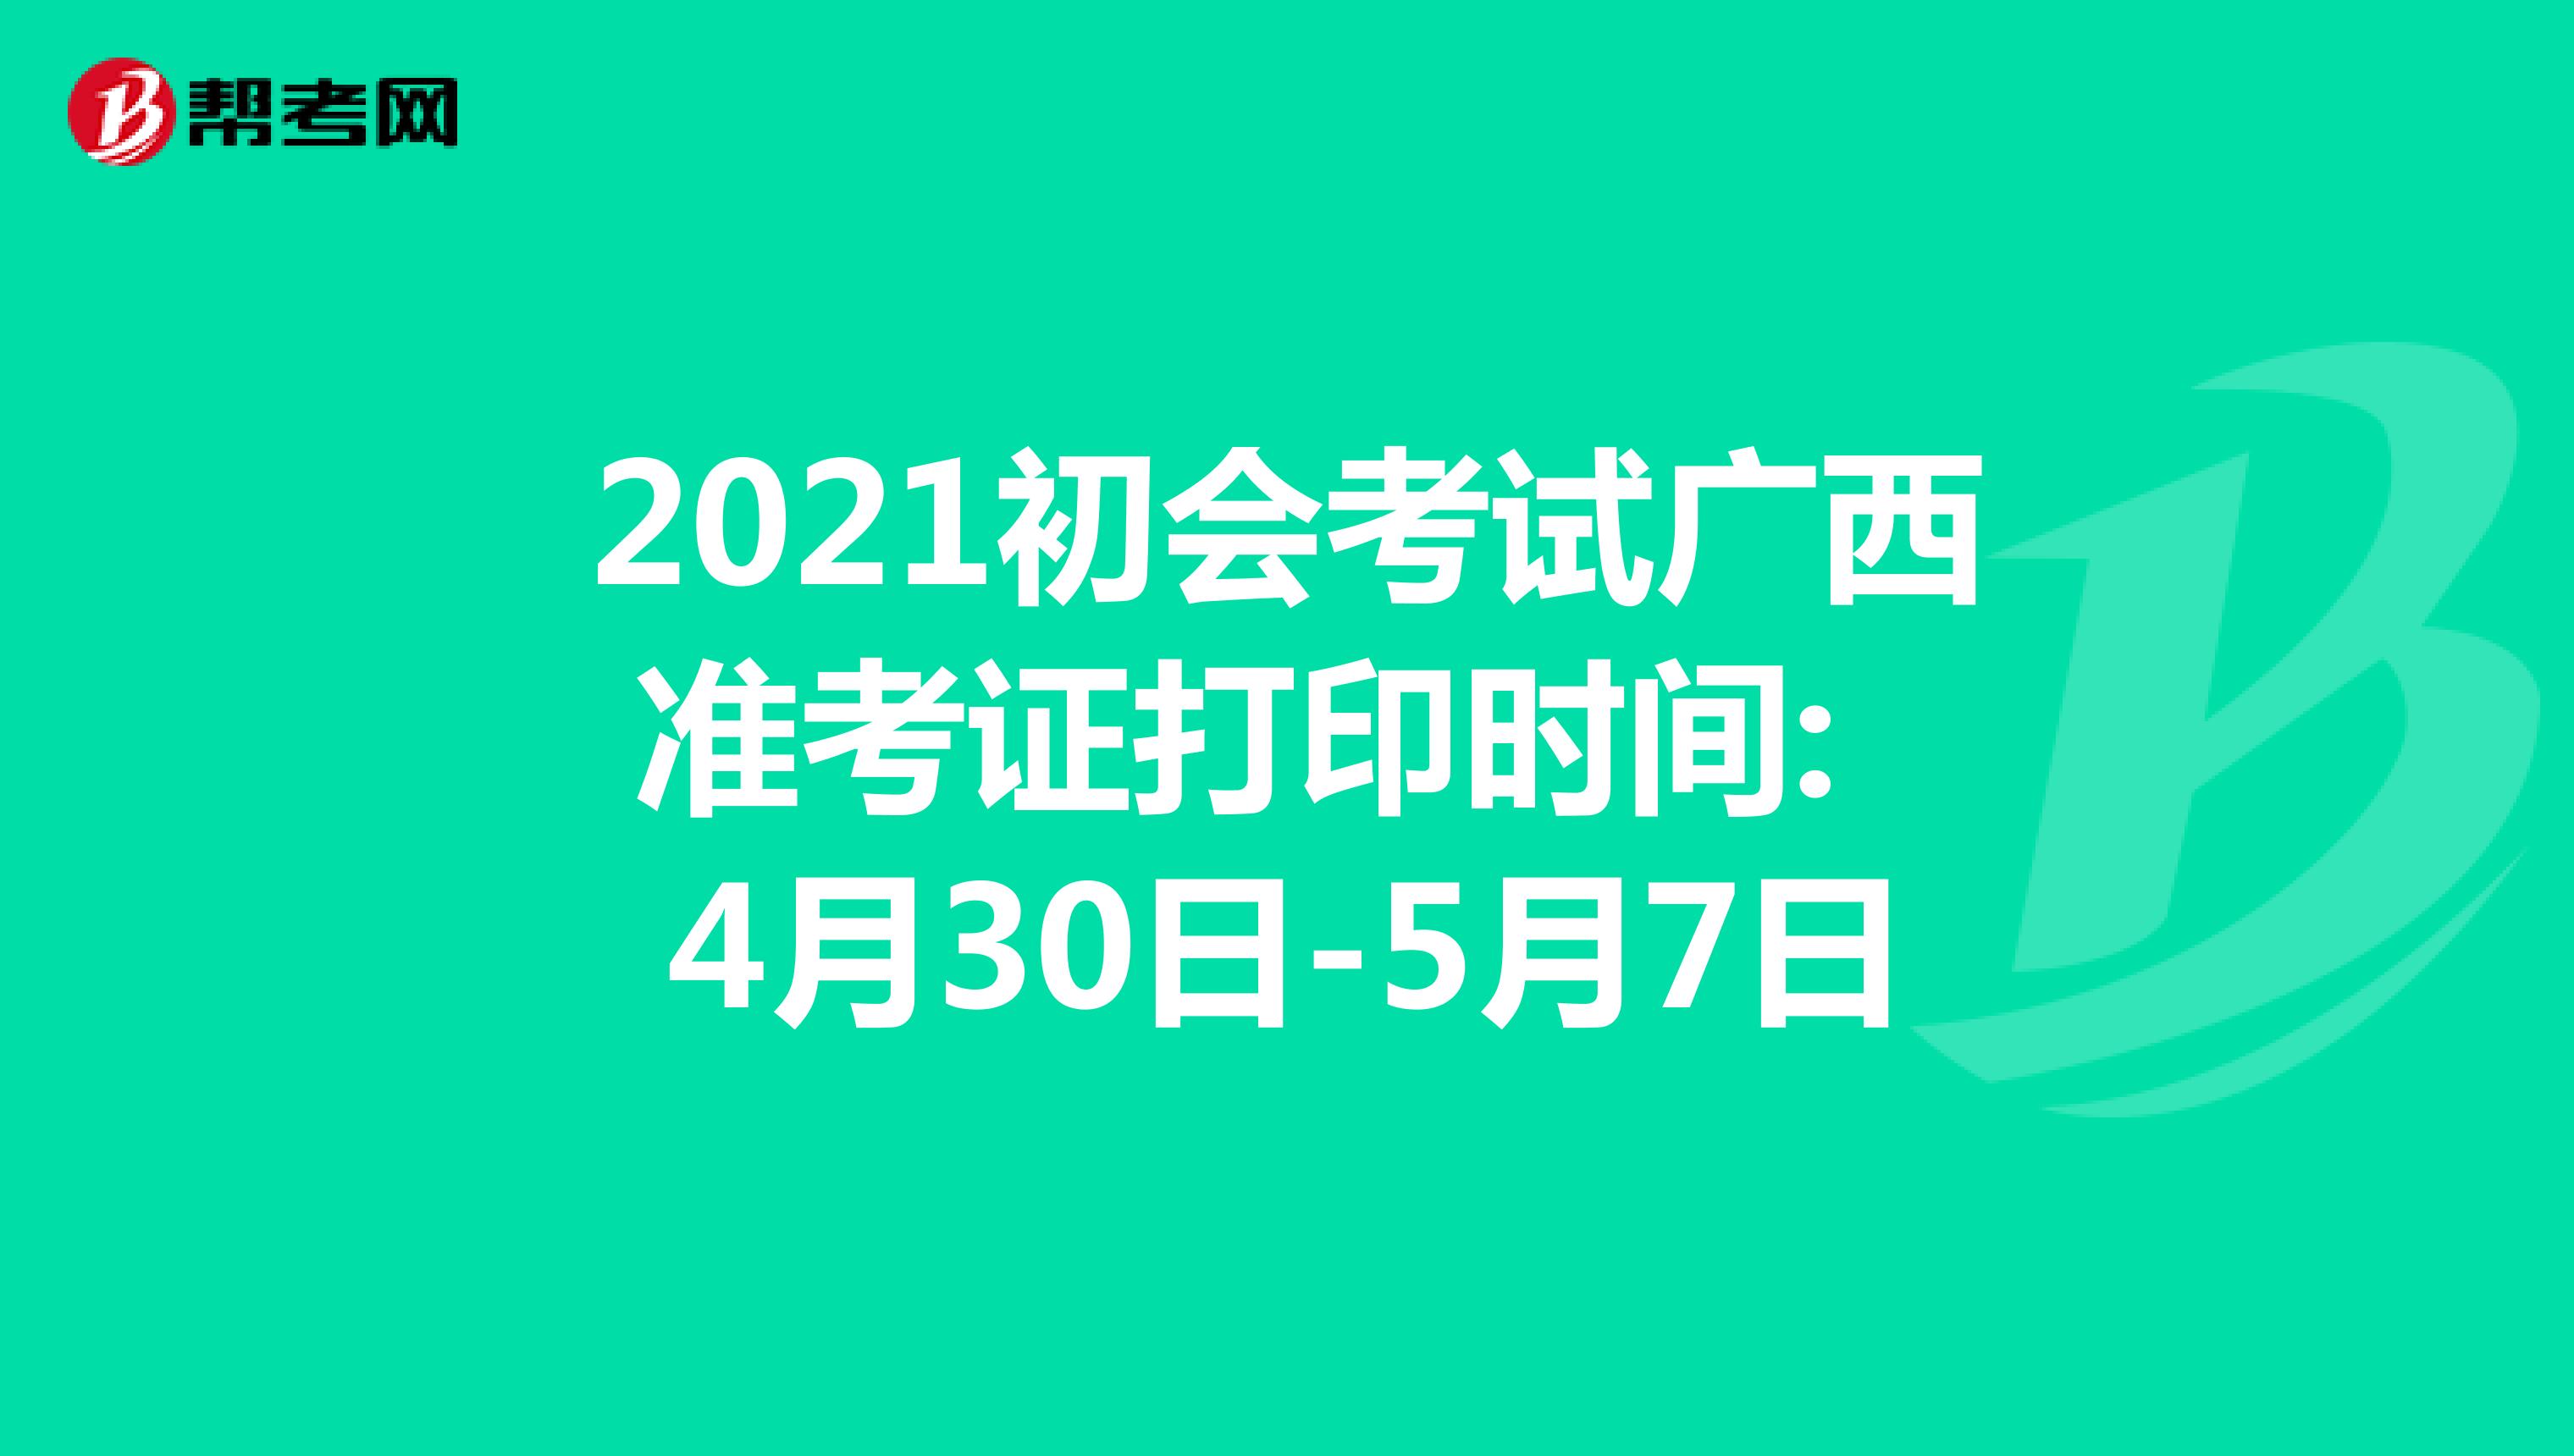 2021年初会考试广西省准考证打印时间: 4月30日-5月7日